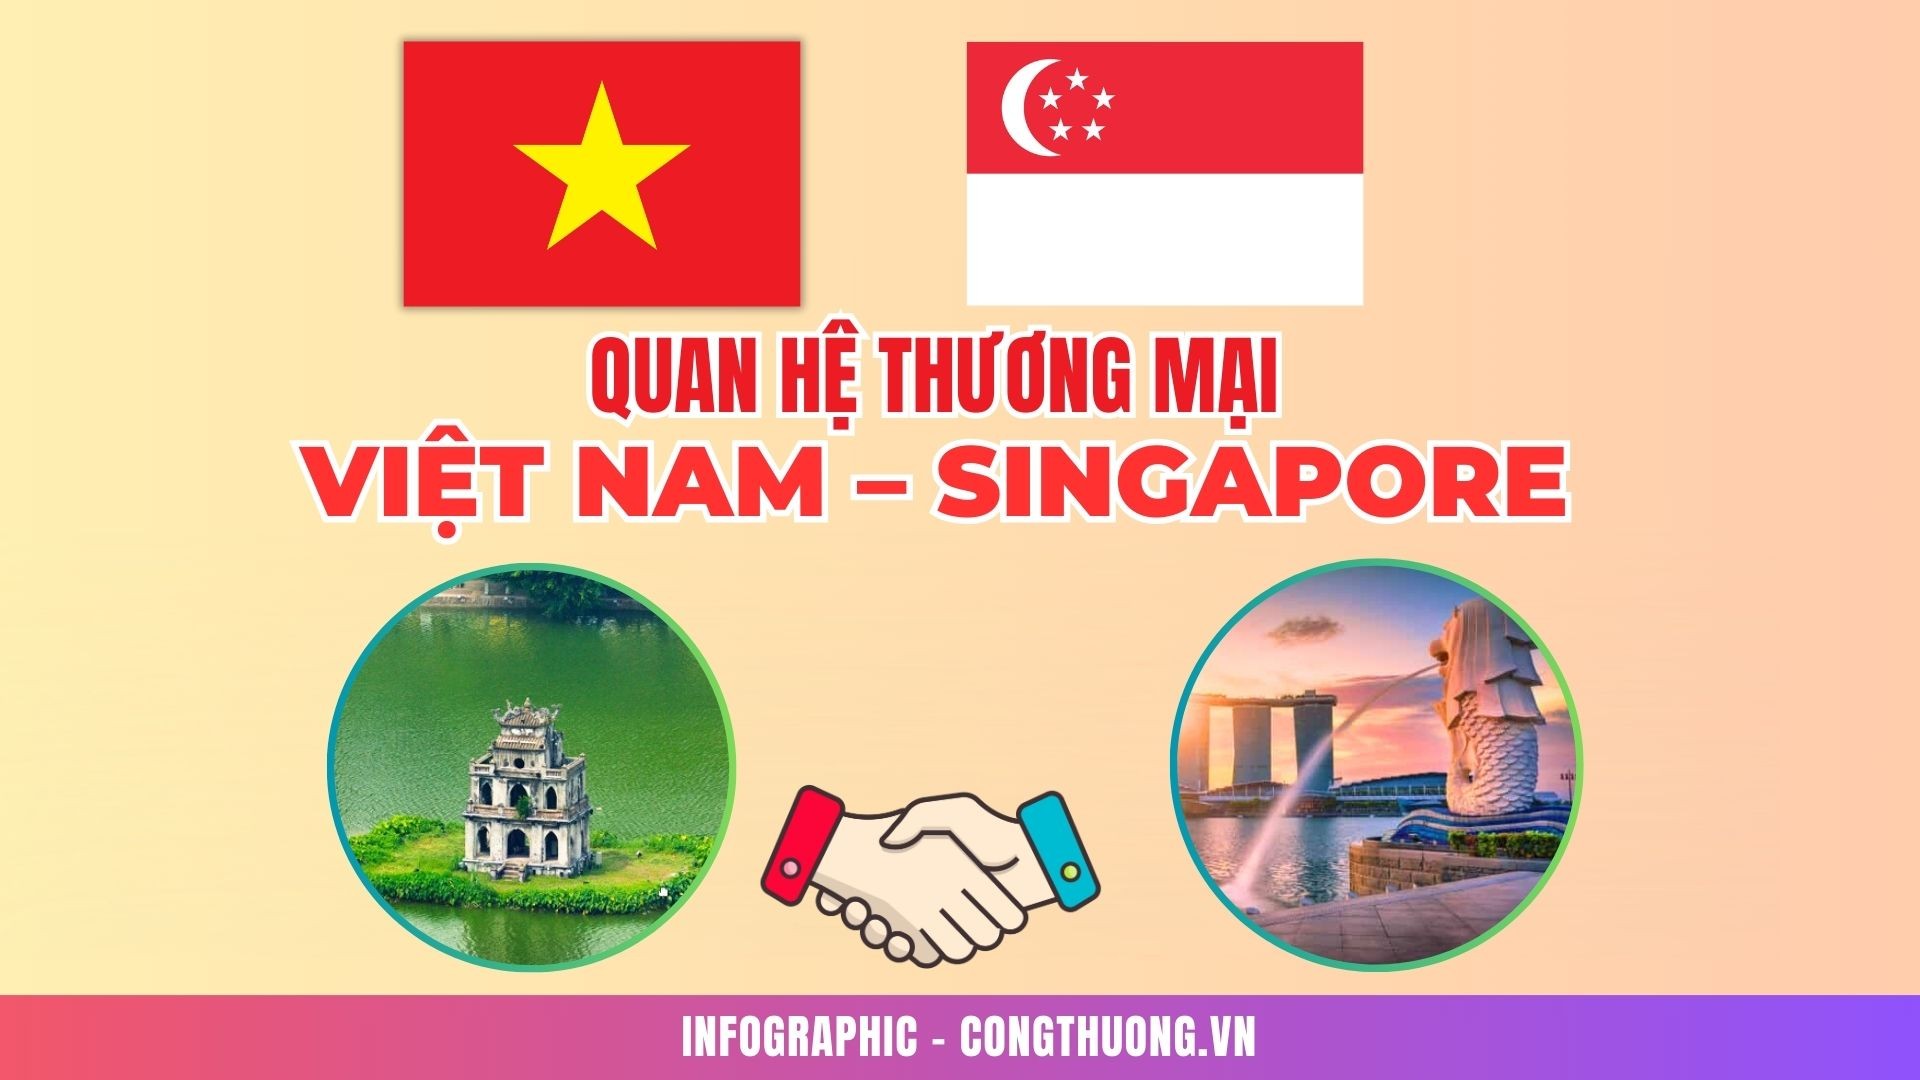 Infographic: Quan hệ thương mại giữa Việt Nam và Singapore